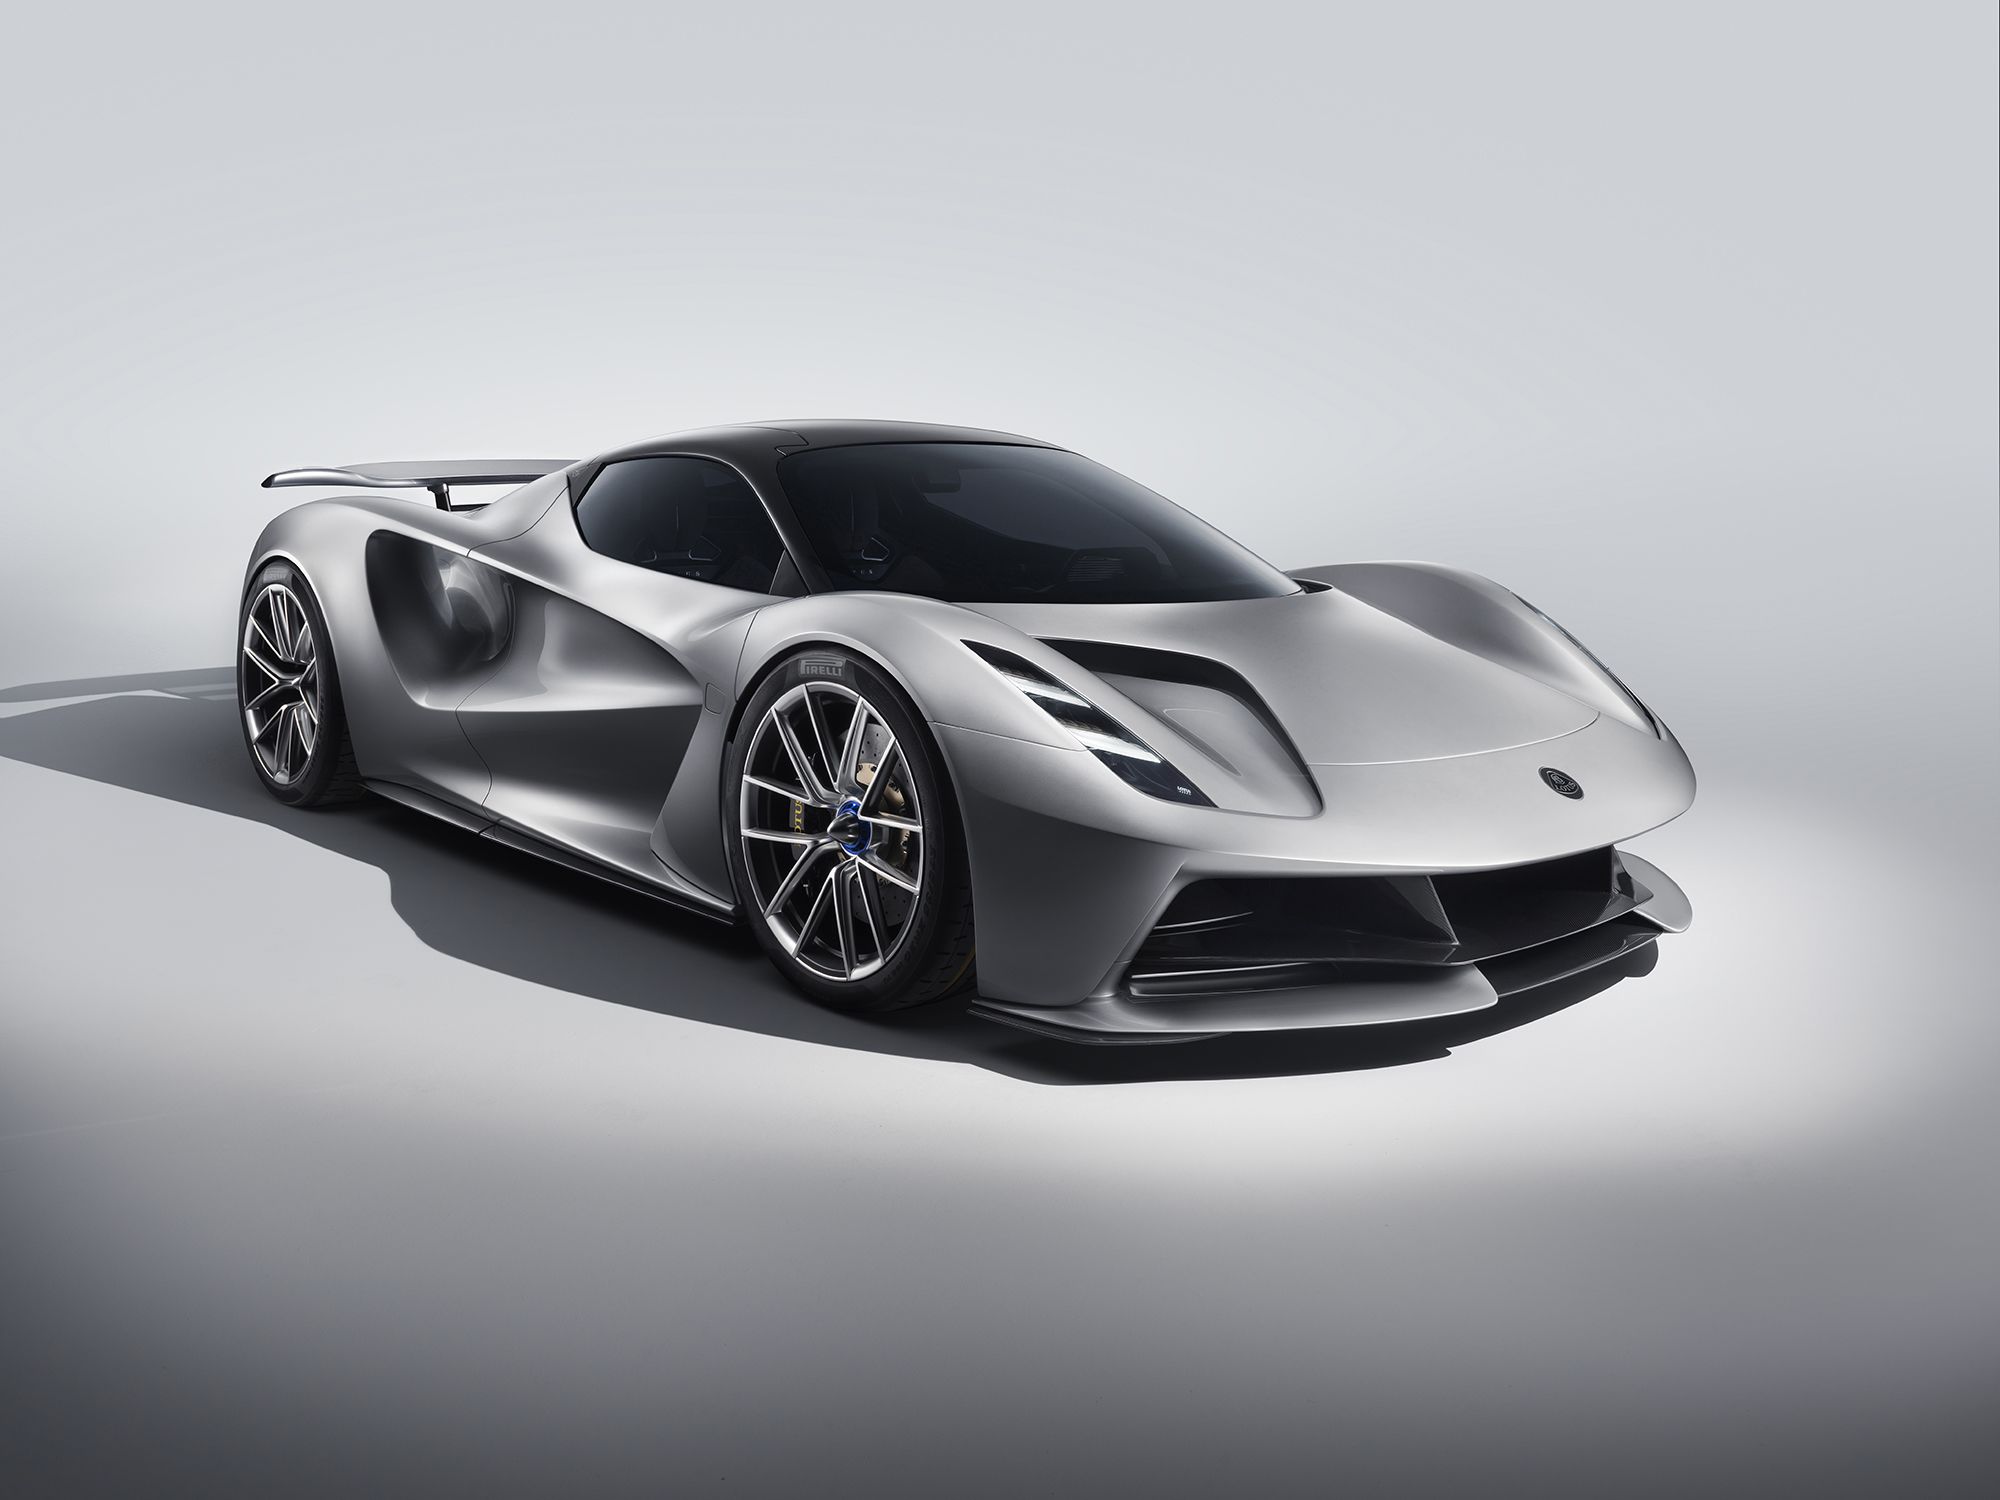 Lotus unveils $2 million electric supercar | CNN Business